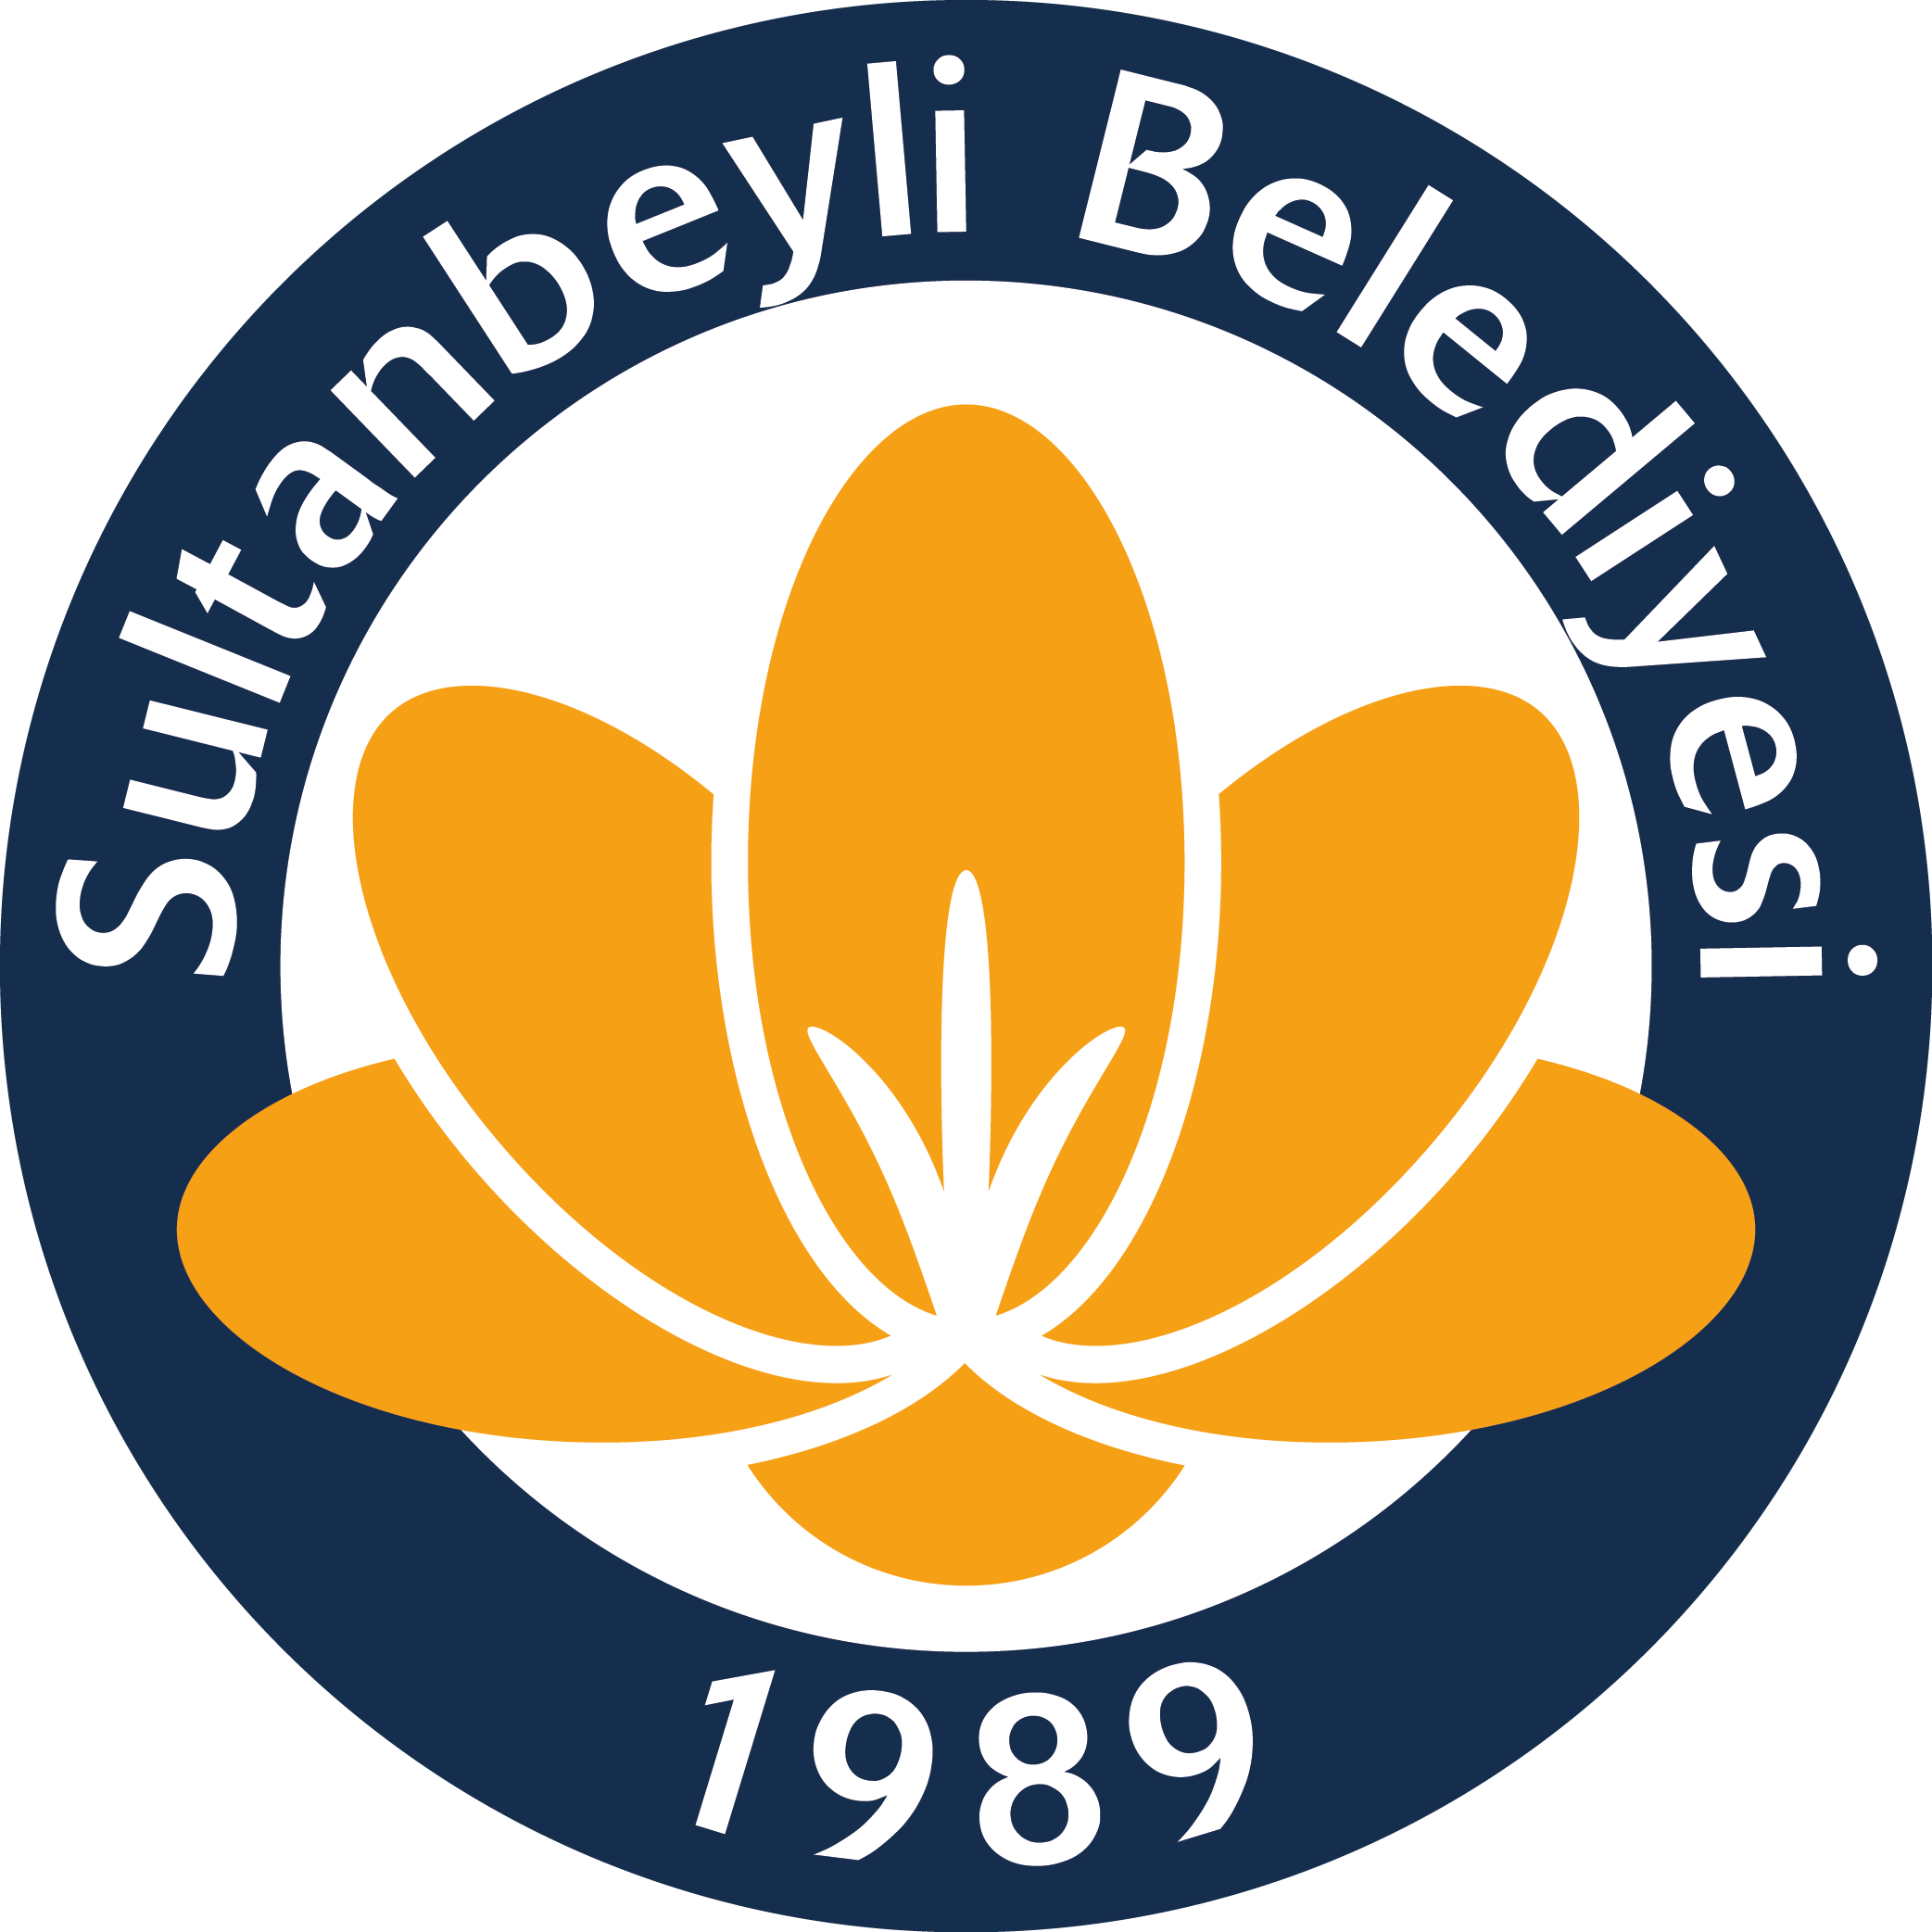 Sultanbeyli Belediyesi (İstanbul) Logo [sultanbeyli.bel.tr] png